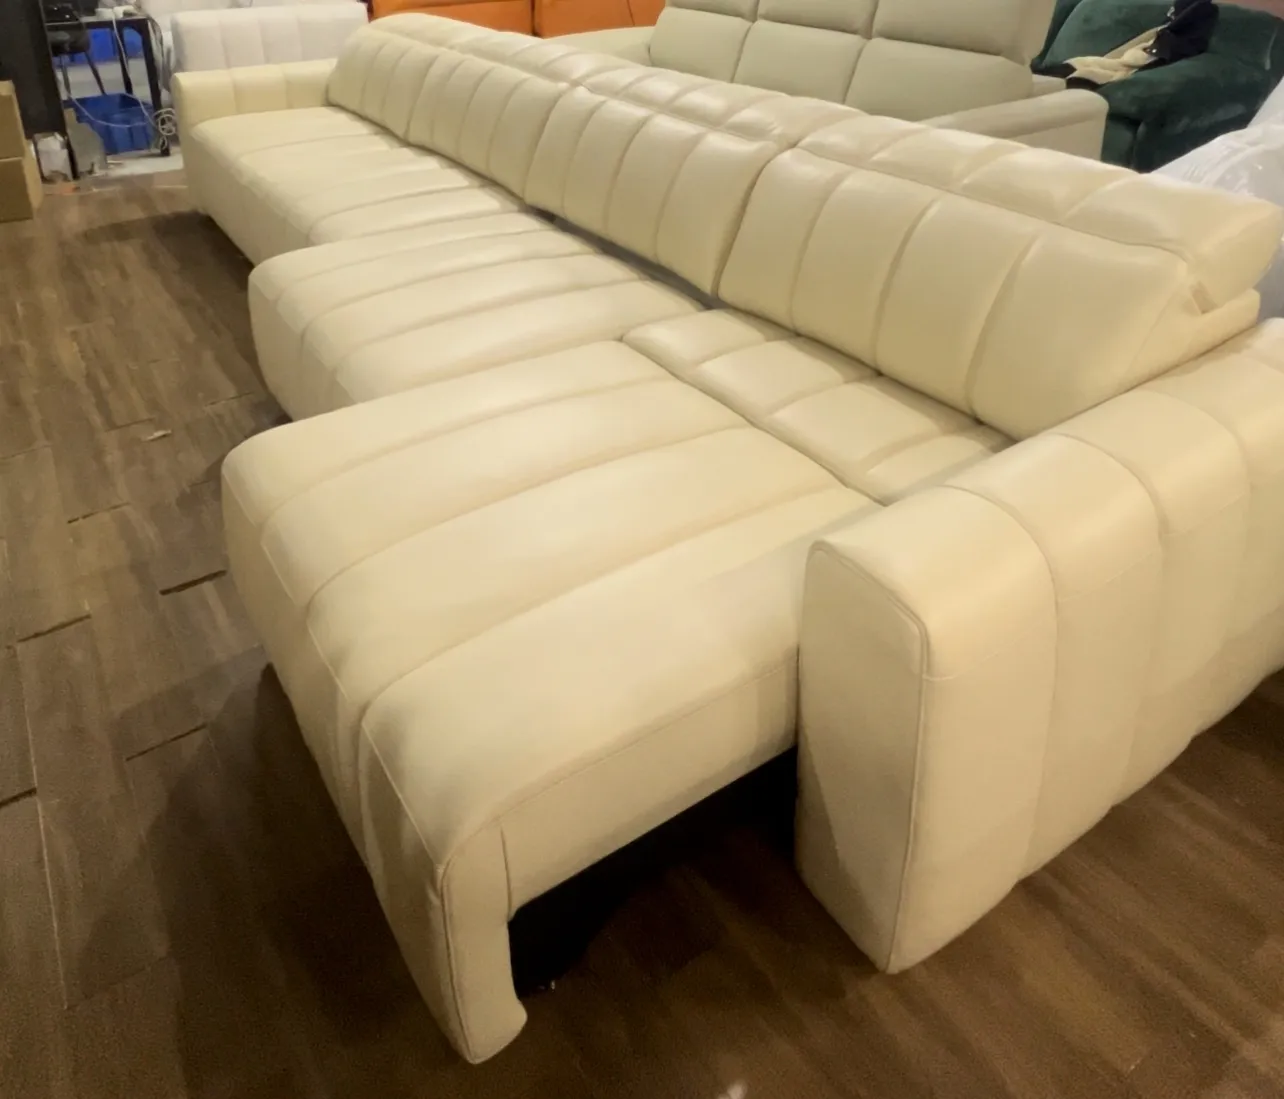 Bonito sofá de lujo para uso doméstico, juego de muebles de sala de estar, sofá cama con control remoto con potencia para usar